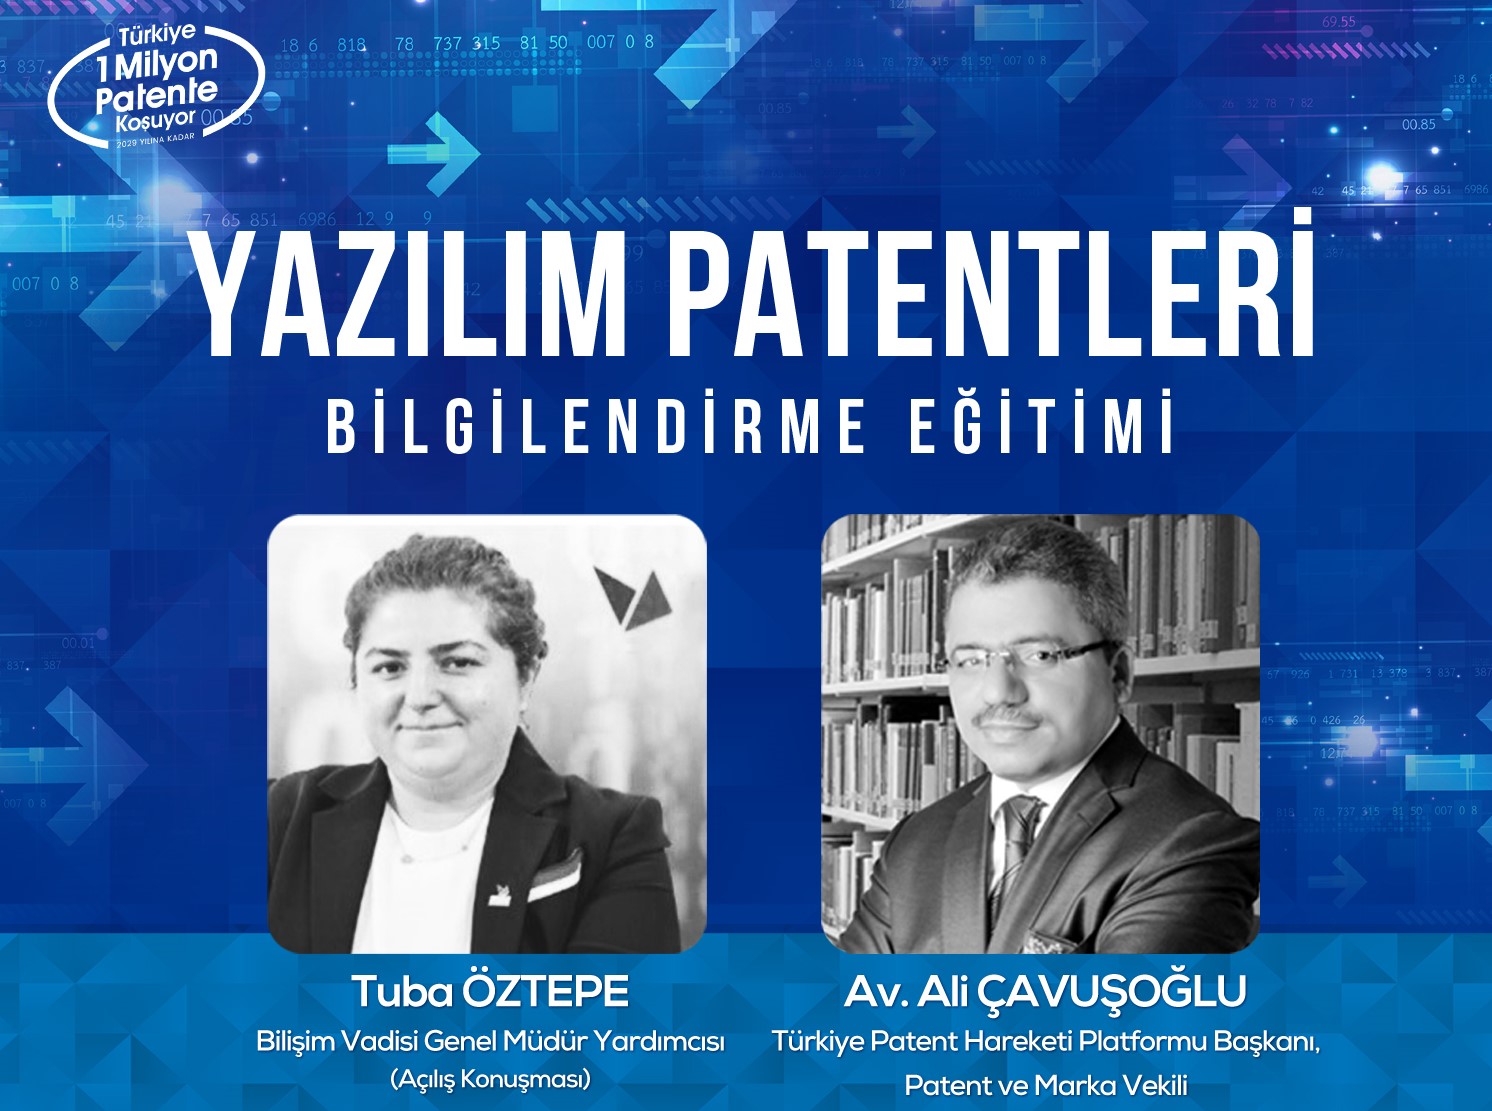 https://turkiyepatenthareketi.org/wp-content/uploads/2023/03/2022.02.24-Yazilim-Patentleri-Egitimi-1.jpg